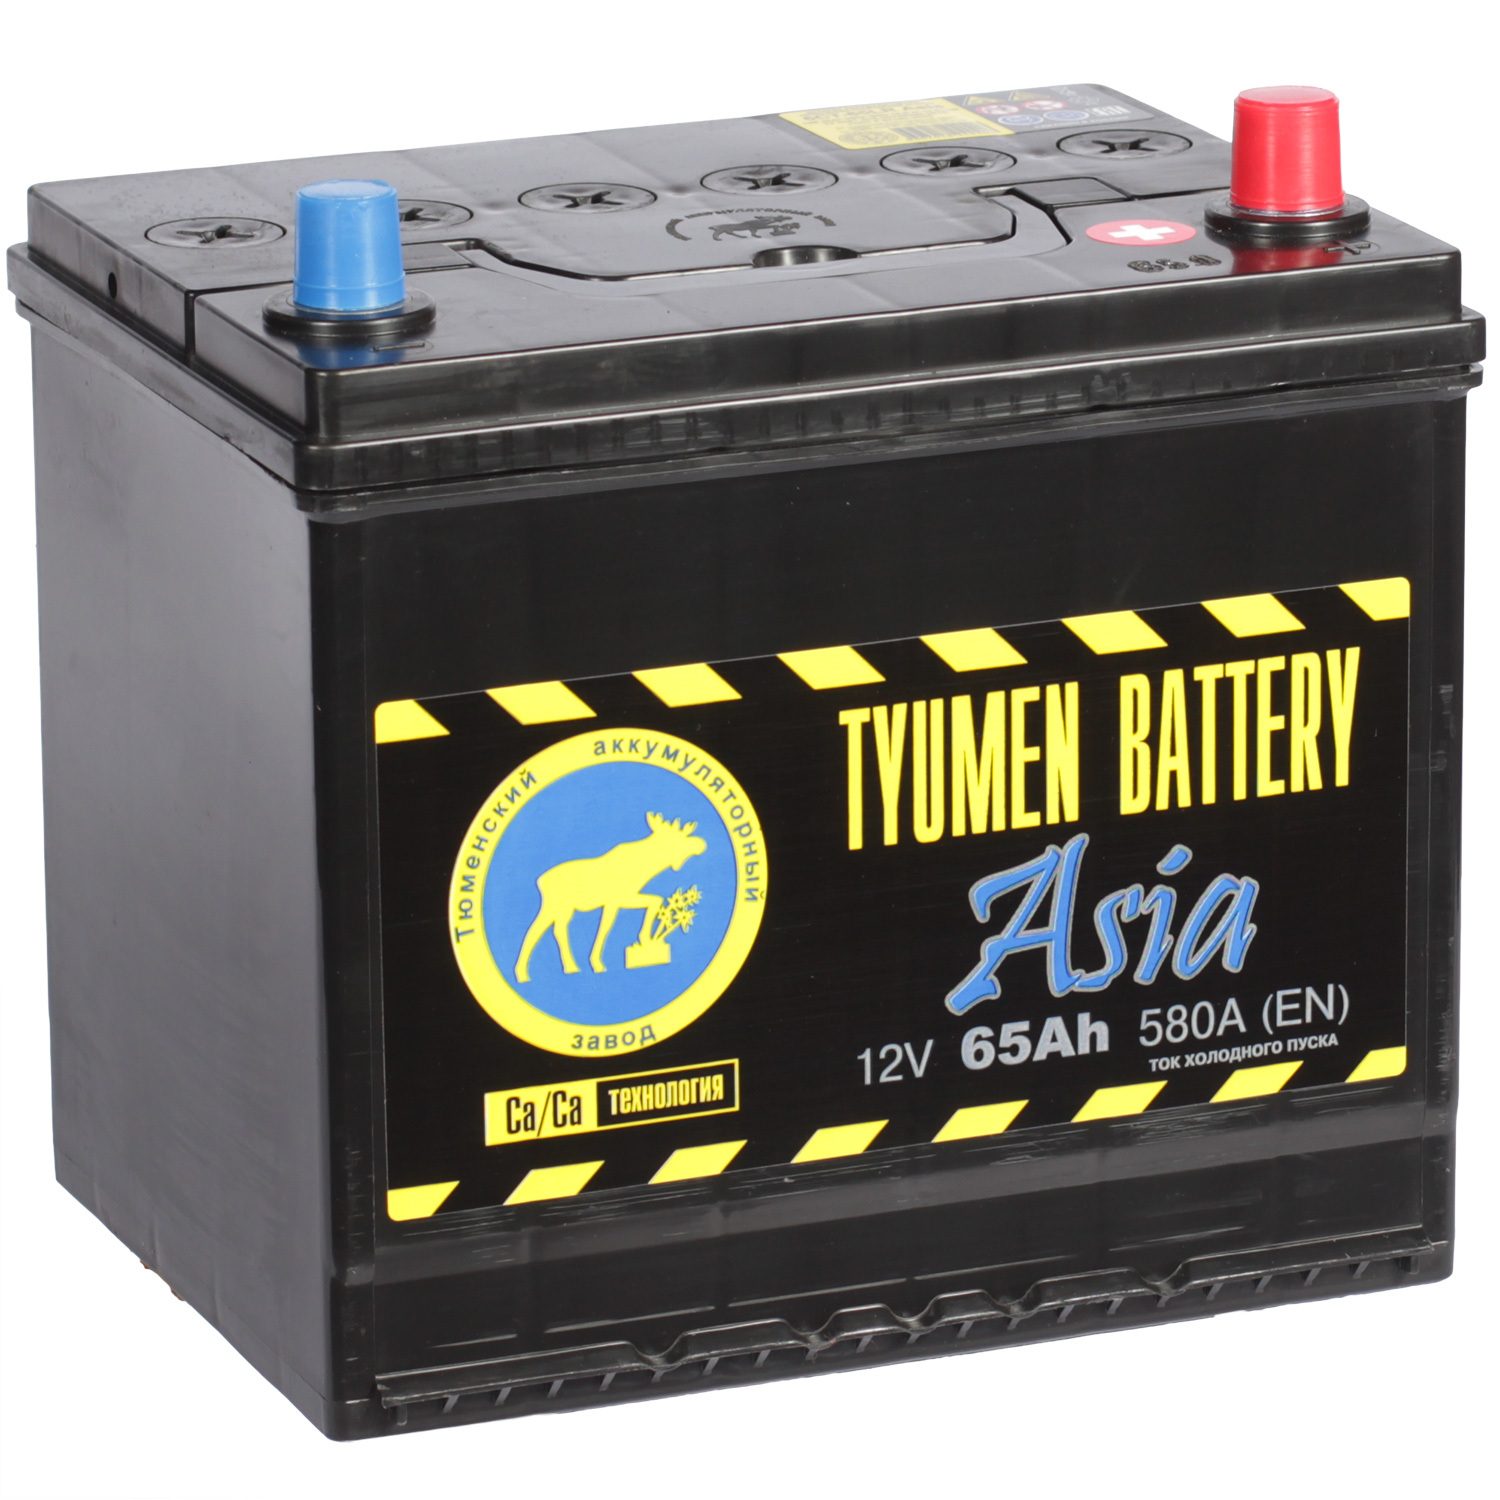 Tyumen Battery Автомобильный аккумулятор Tyumen Battery Asia 65 Ач обратная полярность D23L